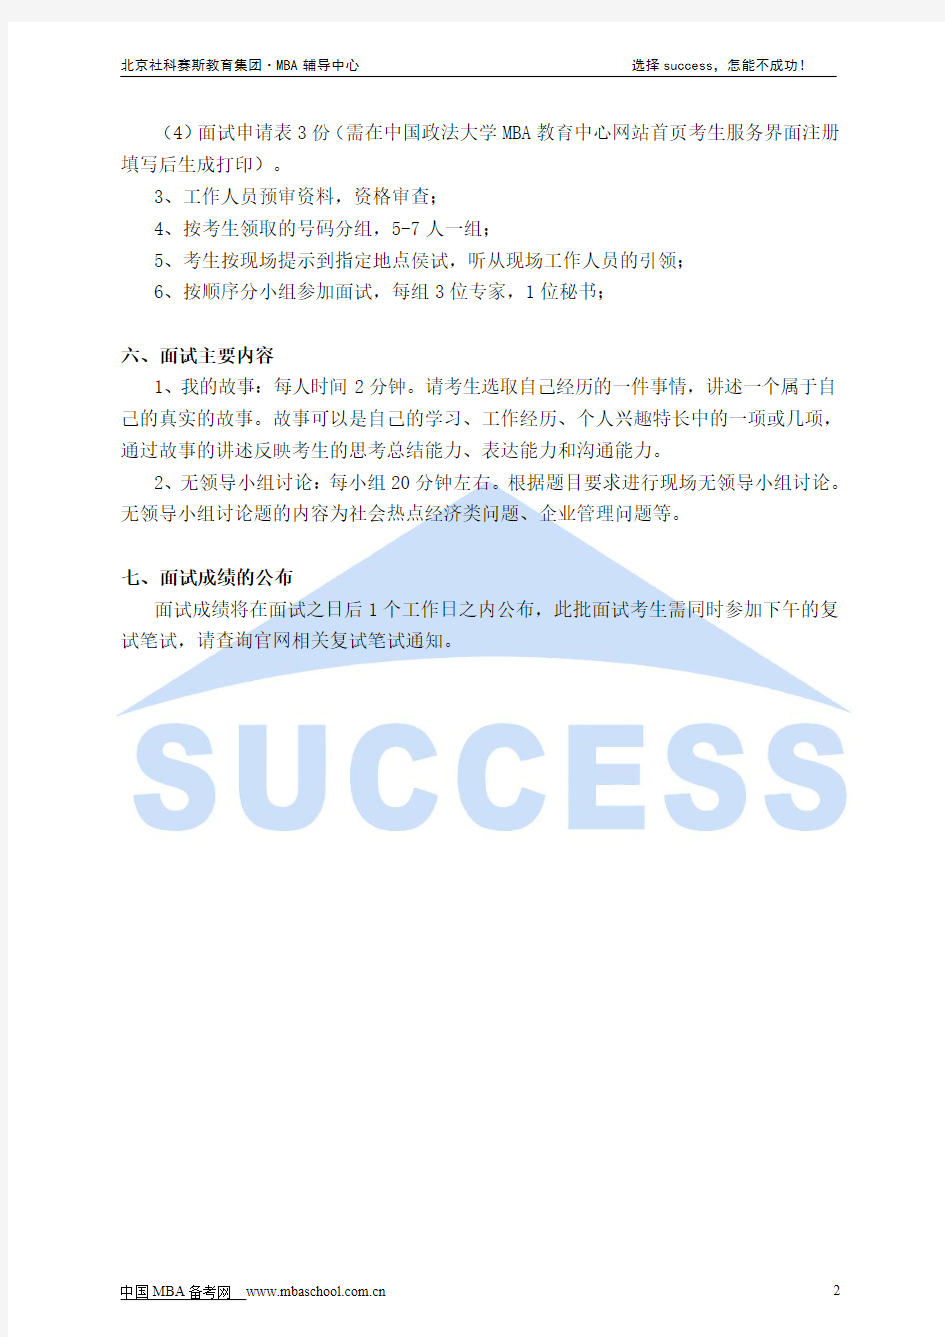 中国政法大学MBA非全日制专场调剂面试通知